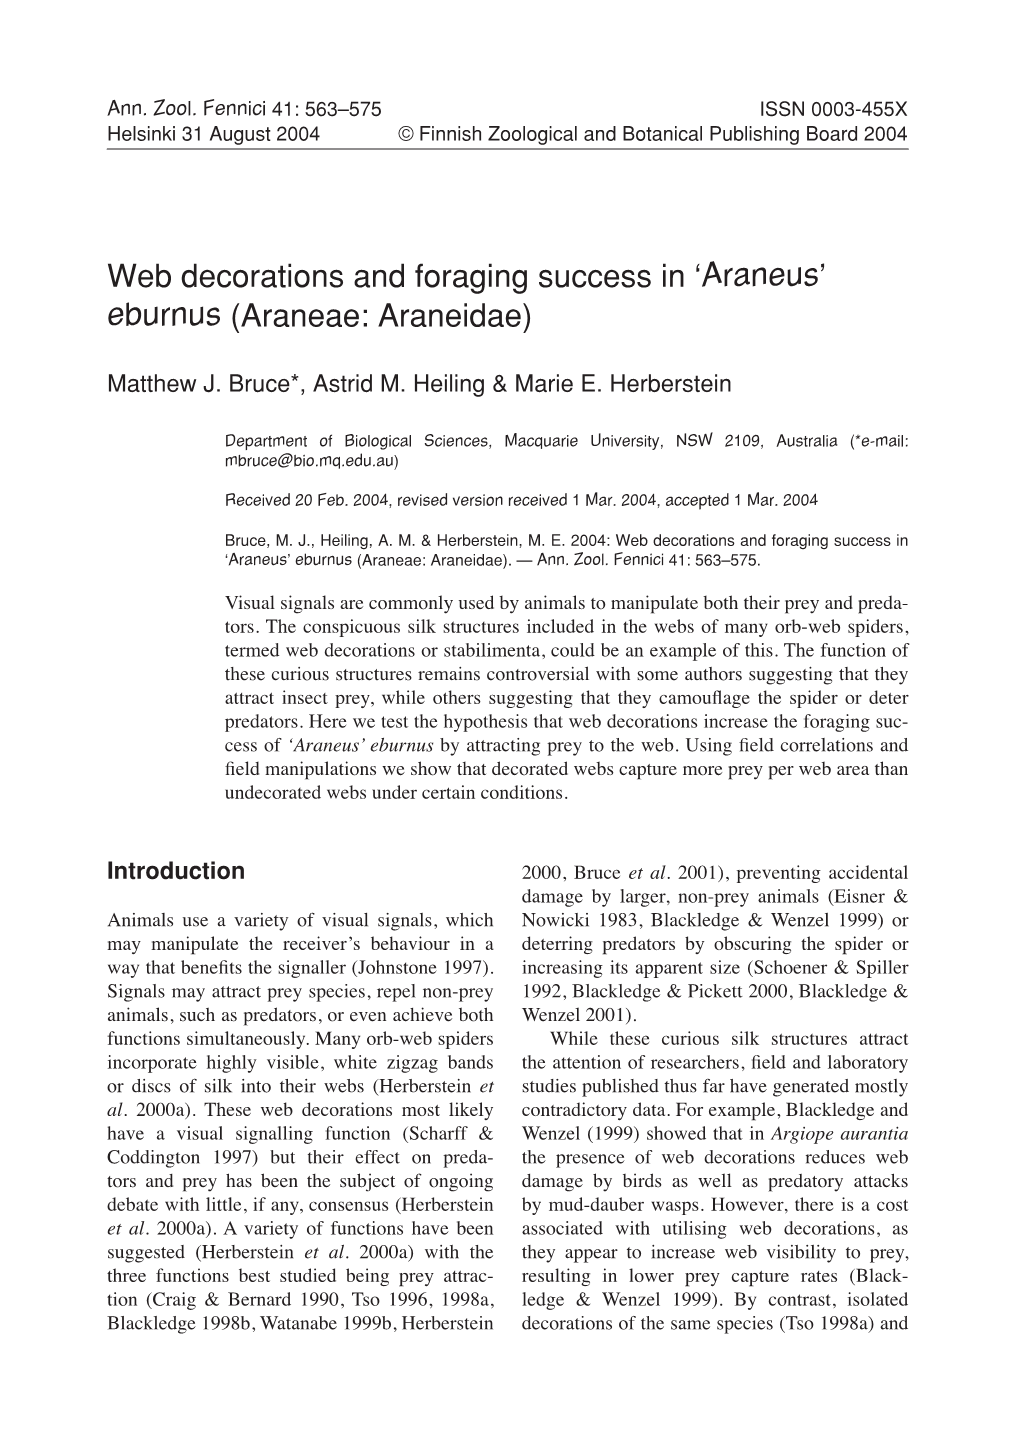 Web Decorations and Foraging Success in 'Araneus' Eburnus